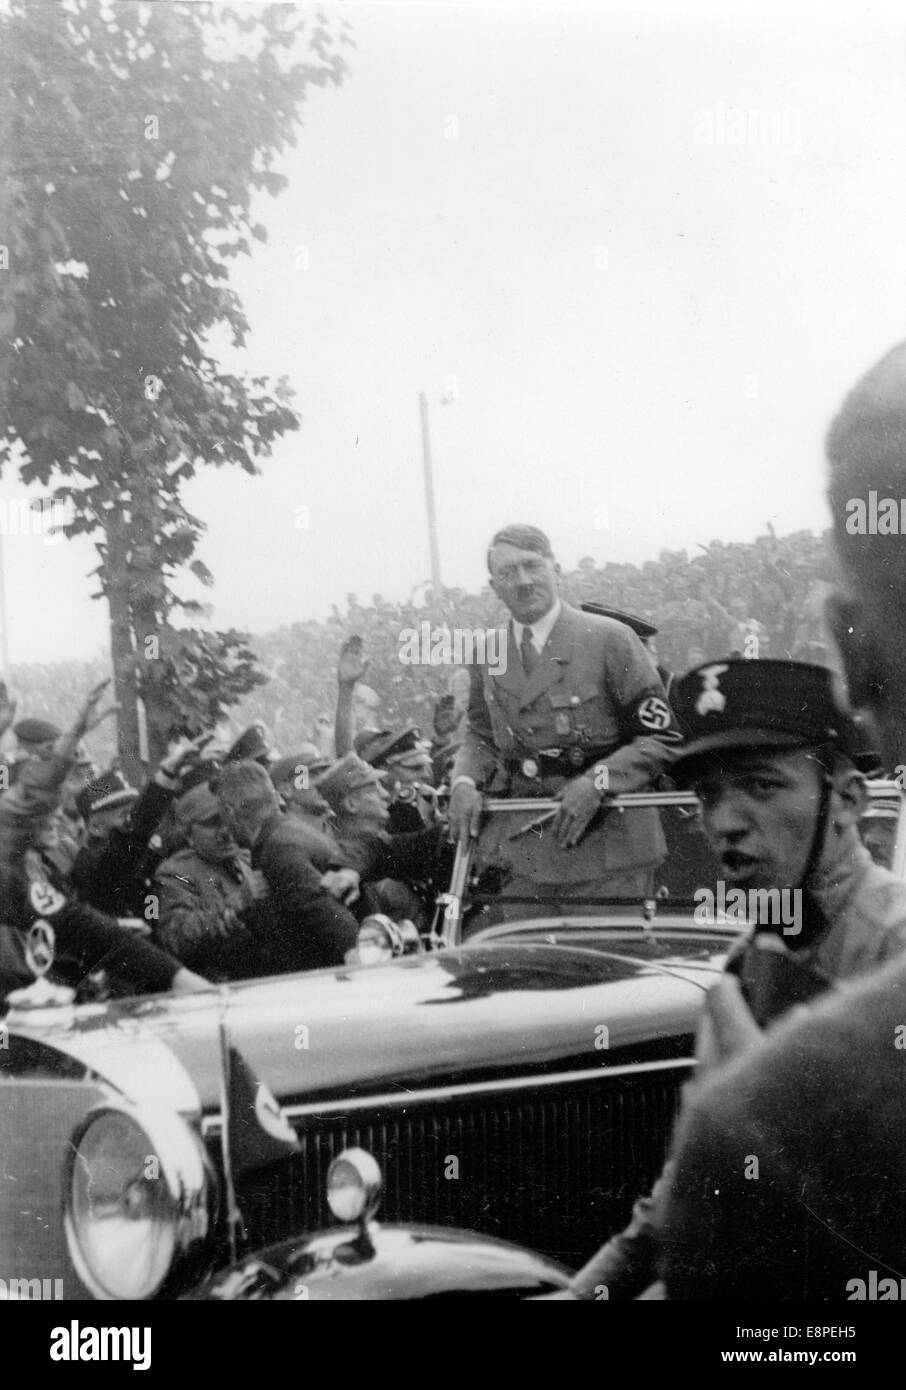 Rally di Norimberga 1933 a Norimberga, Germania - Adolf Hitler nella sua vettura tra i membri della SA (Sturmabteilung) presso il raduno del partito nazista. (Difetti di qualità dovuti alla copia storica dell'immagine) Fotoarchiv für Zeitgeschichtee - NESSUN SERVIZIO DI CABLAGGIO – Foto Stock